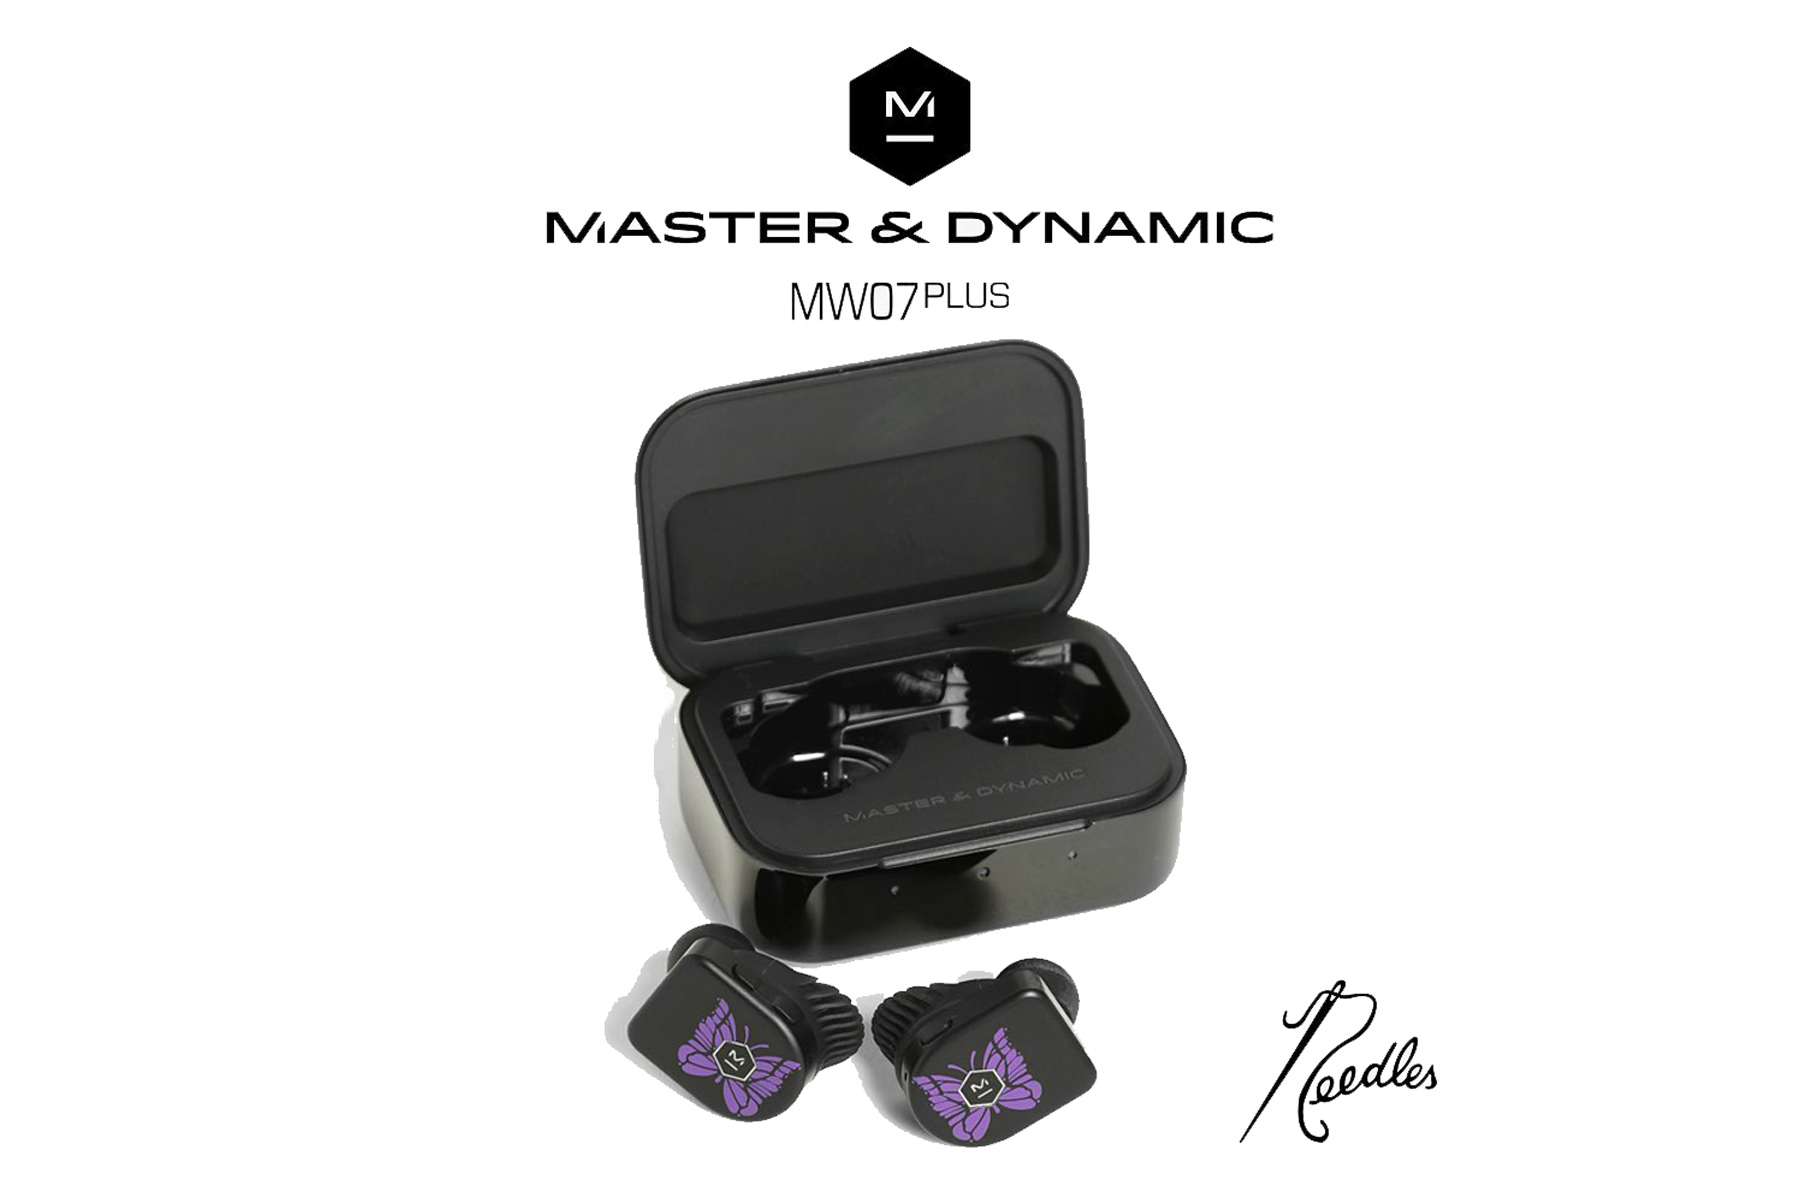 NEEDLES x MASTER & DYNAMIC 全新联名无线耳机正式发布